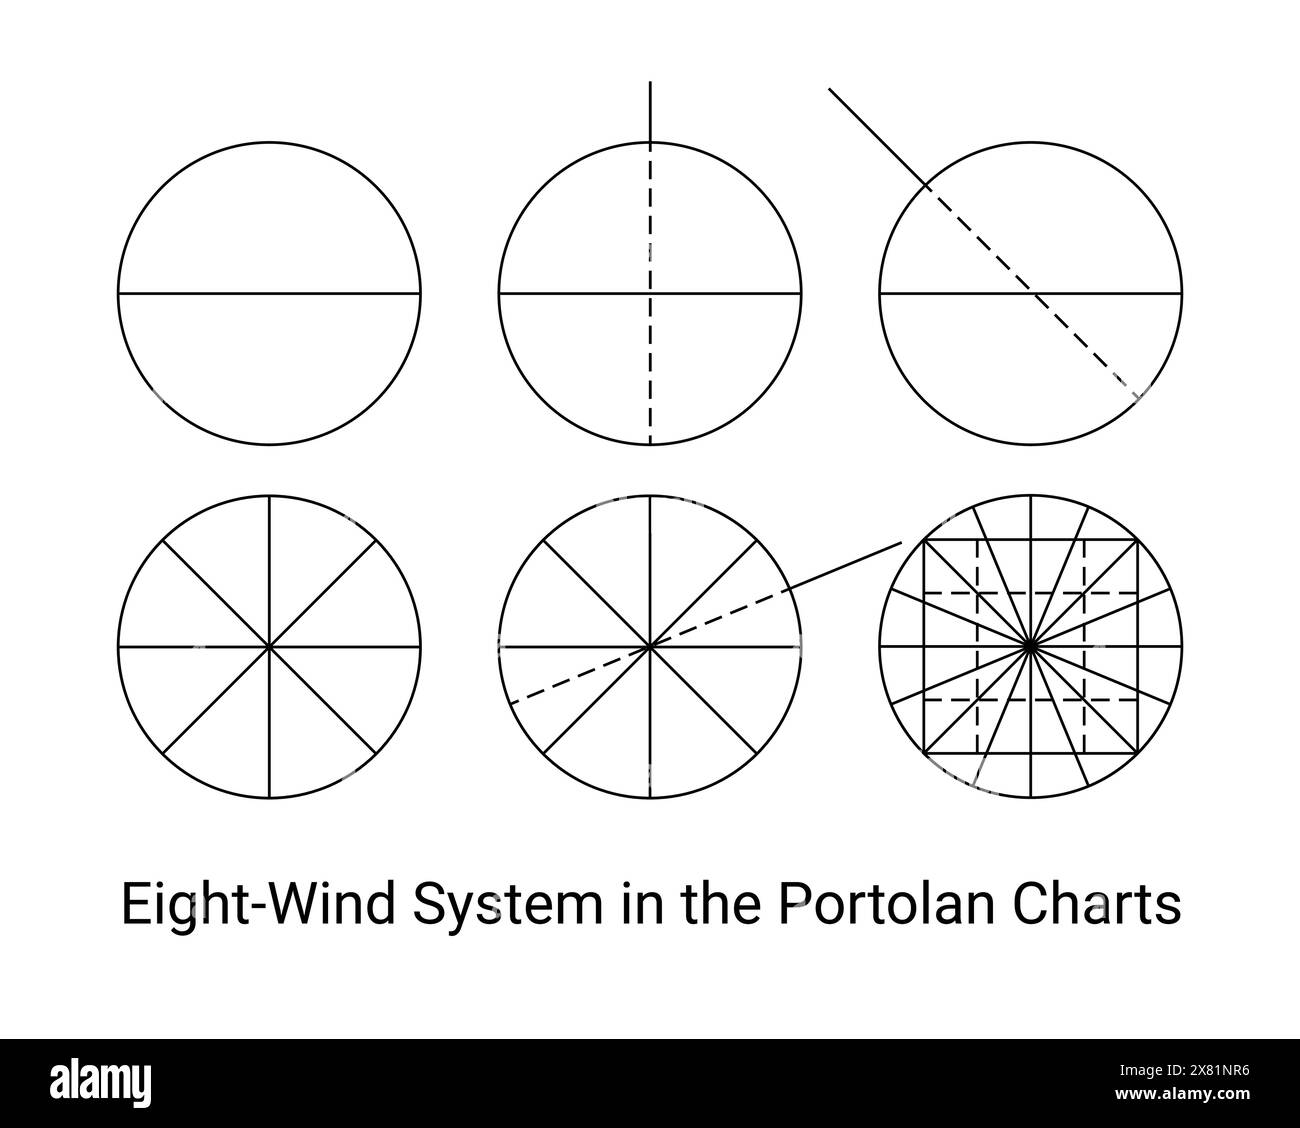 Acht Windsysteme in den Portolankarten, einfache Entwurfsdiagramme Stock Vektor